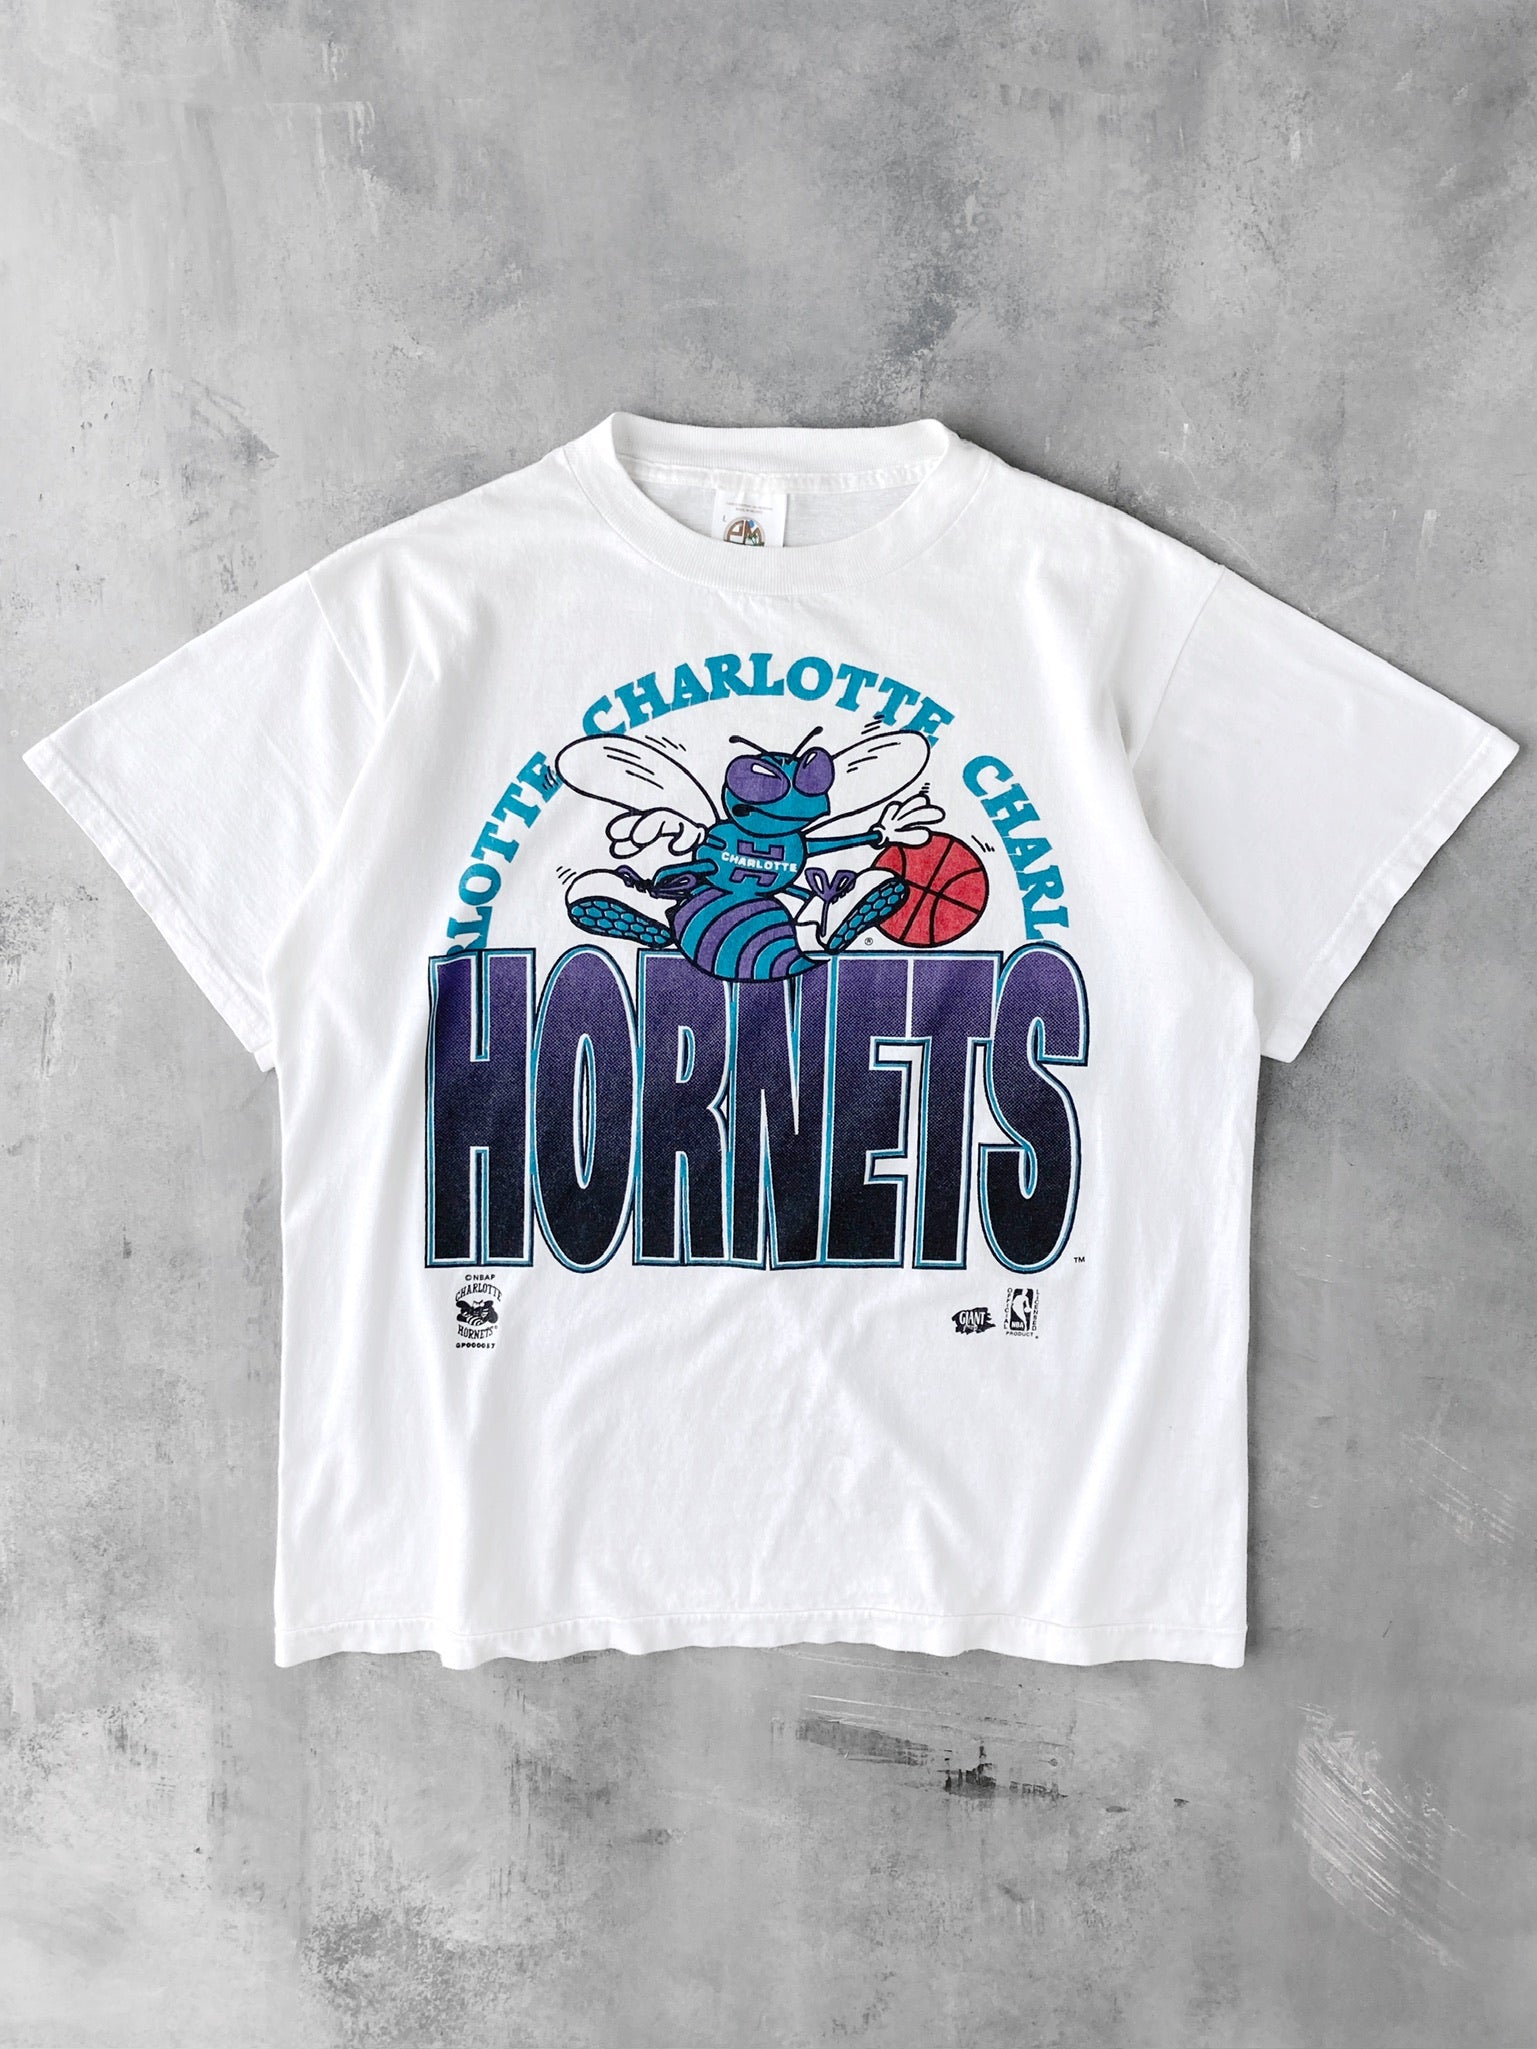 Charlotte Hornets T-Shirt 90's - Large – Lot 1 Vintage